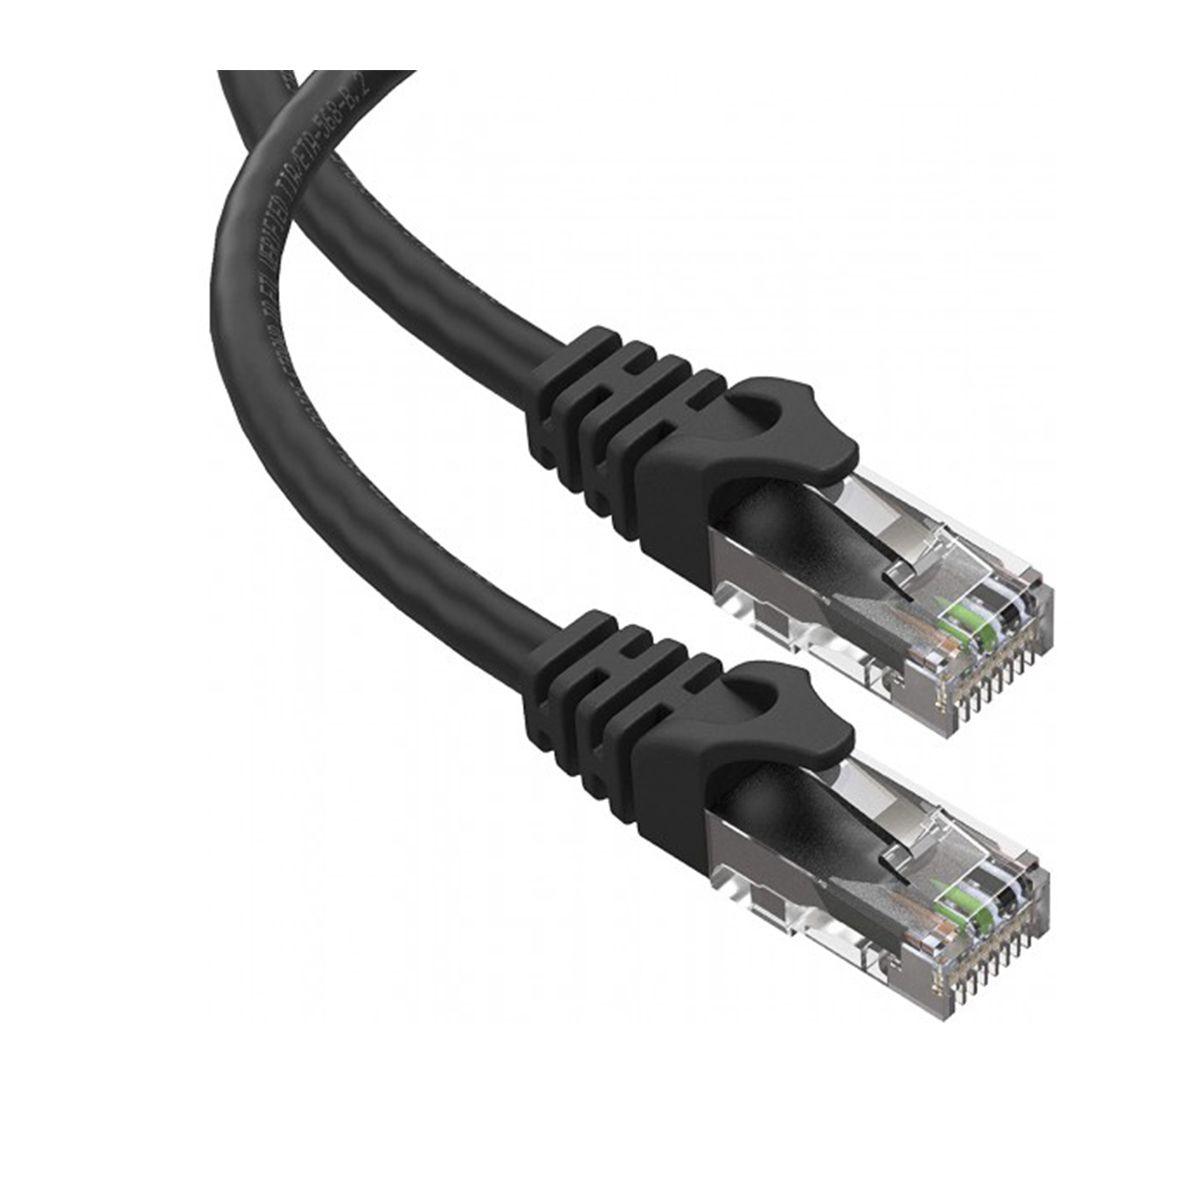 BMS Communication Cable RJ45 Ethernet Type for Pylontech US2000C/US3000C/US5000 - VoltaconSolar